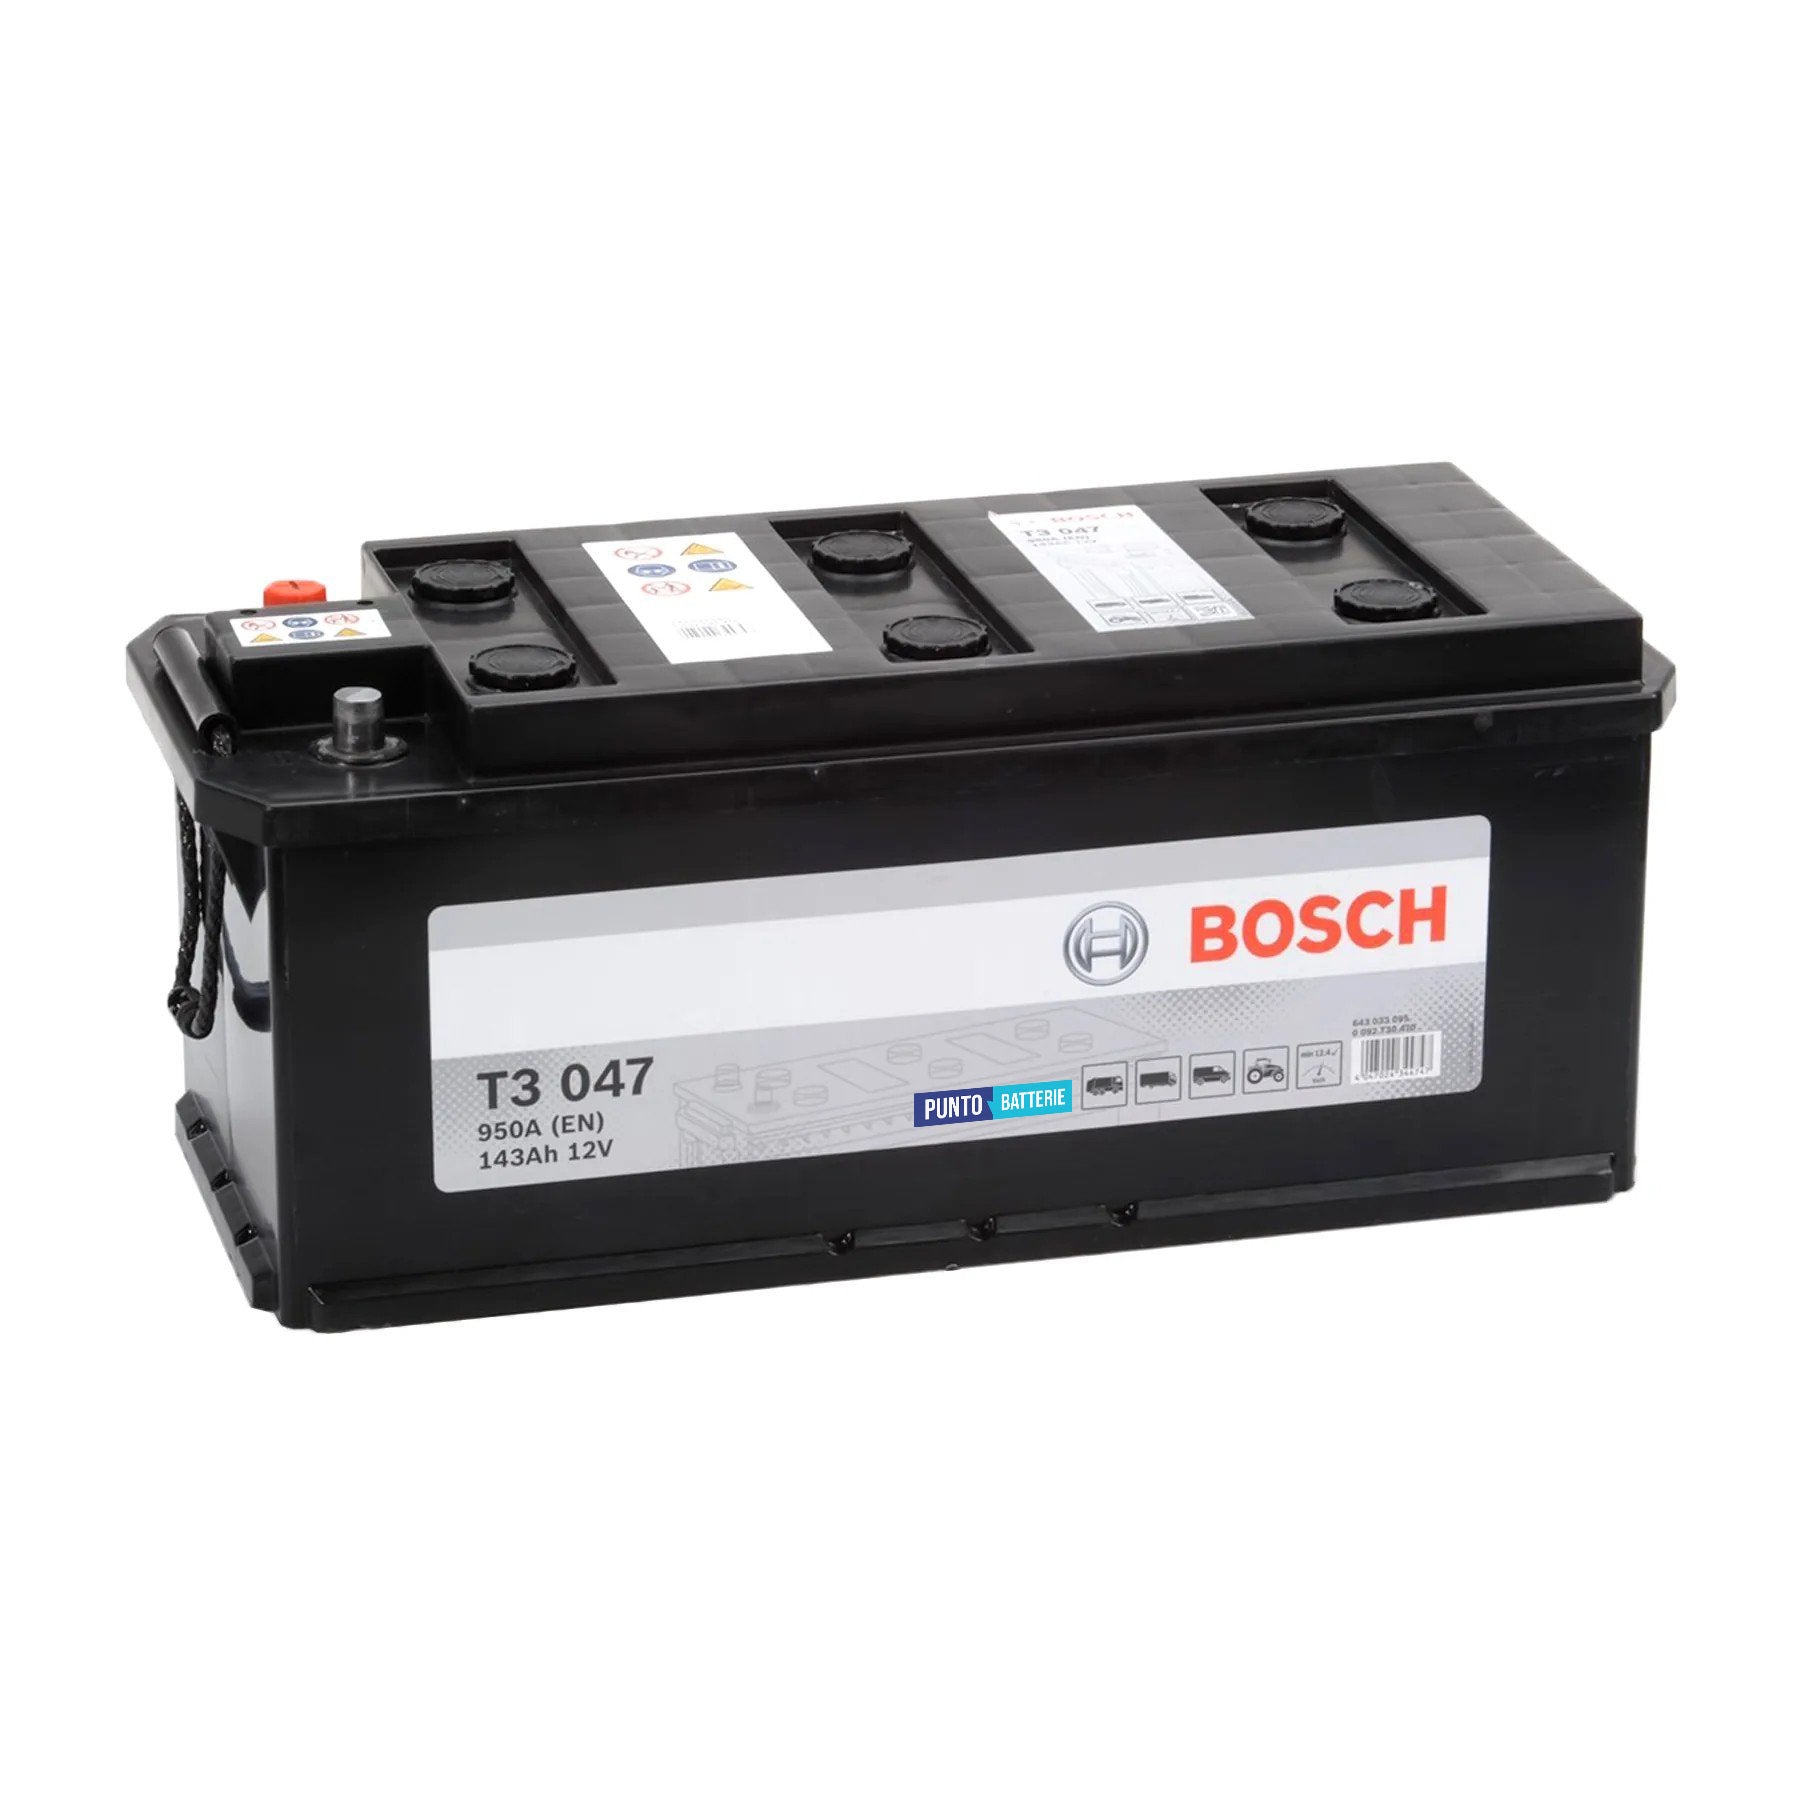 Batteria originale Bosch T3 T3047, dimensioni 514 x 218 x 210, polo positivo a sinistra, 12 volt, 143 amperora, 950 ampere. Batteria per camion e veicoli pesanti.